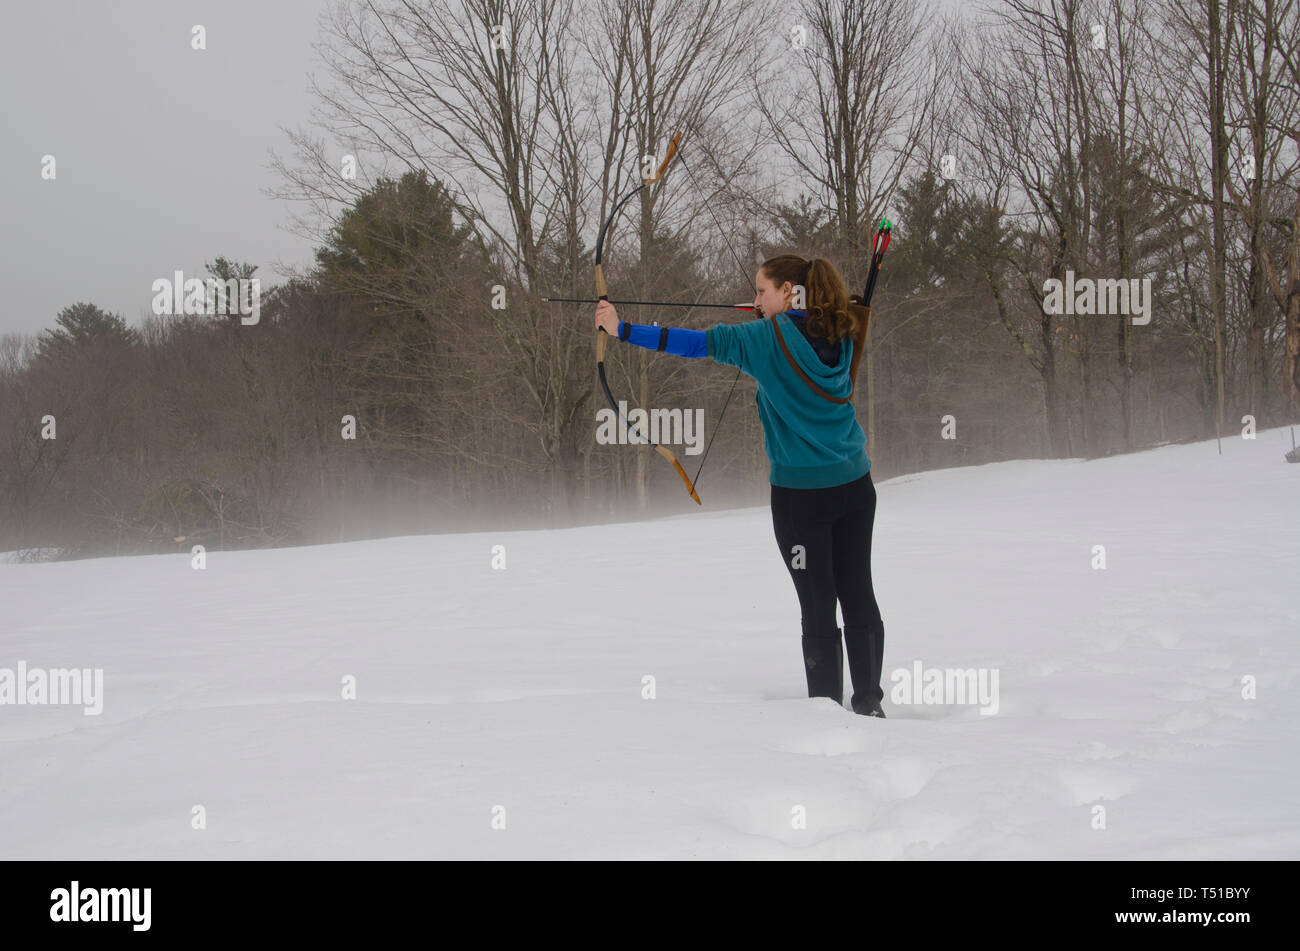 Donna tiro tiro con l'arco nella neve, Maine, Stati Uniti d'America Foto Stock